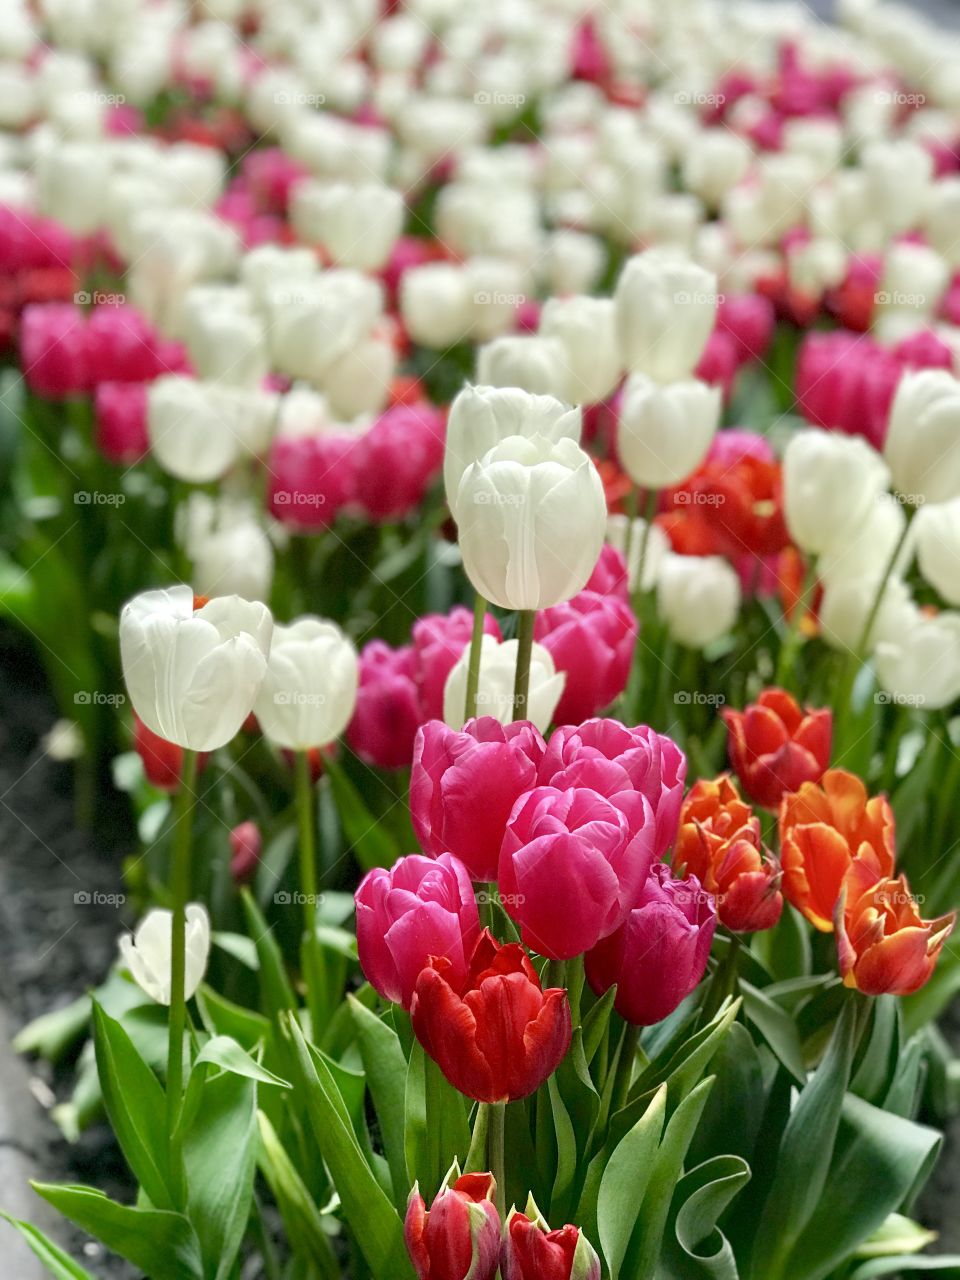 Tulips near Rockefeller Center in New York City 